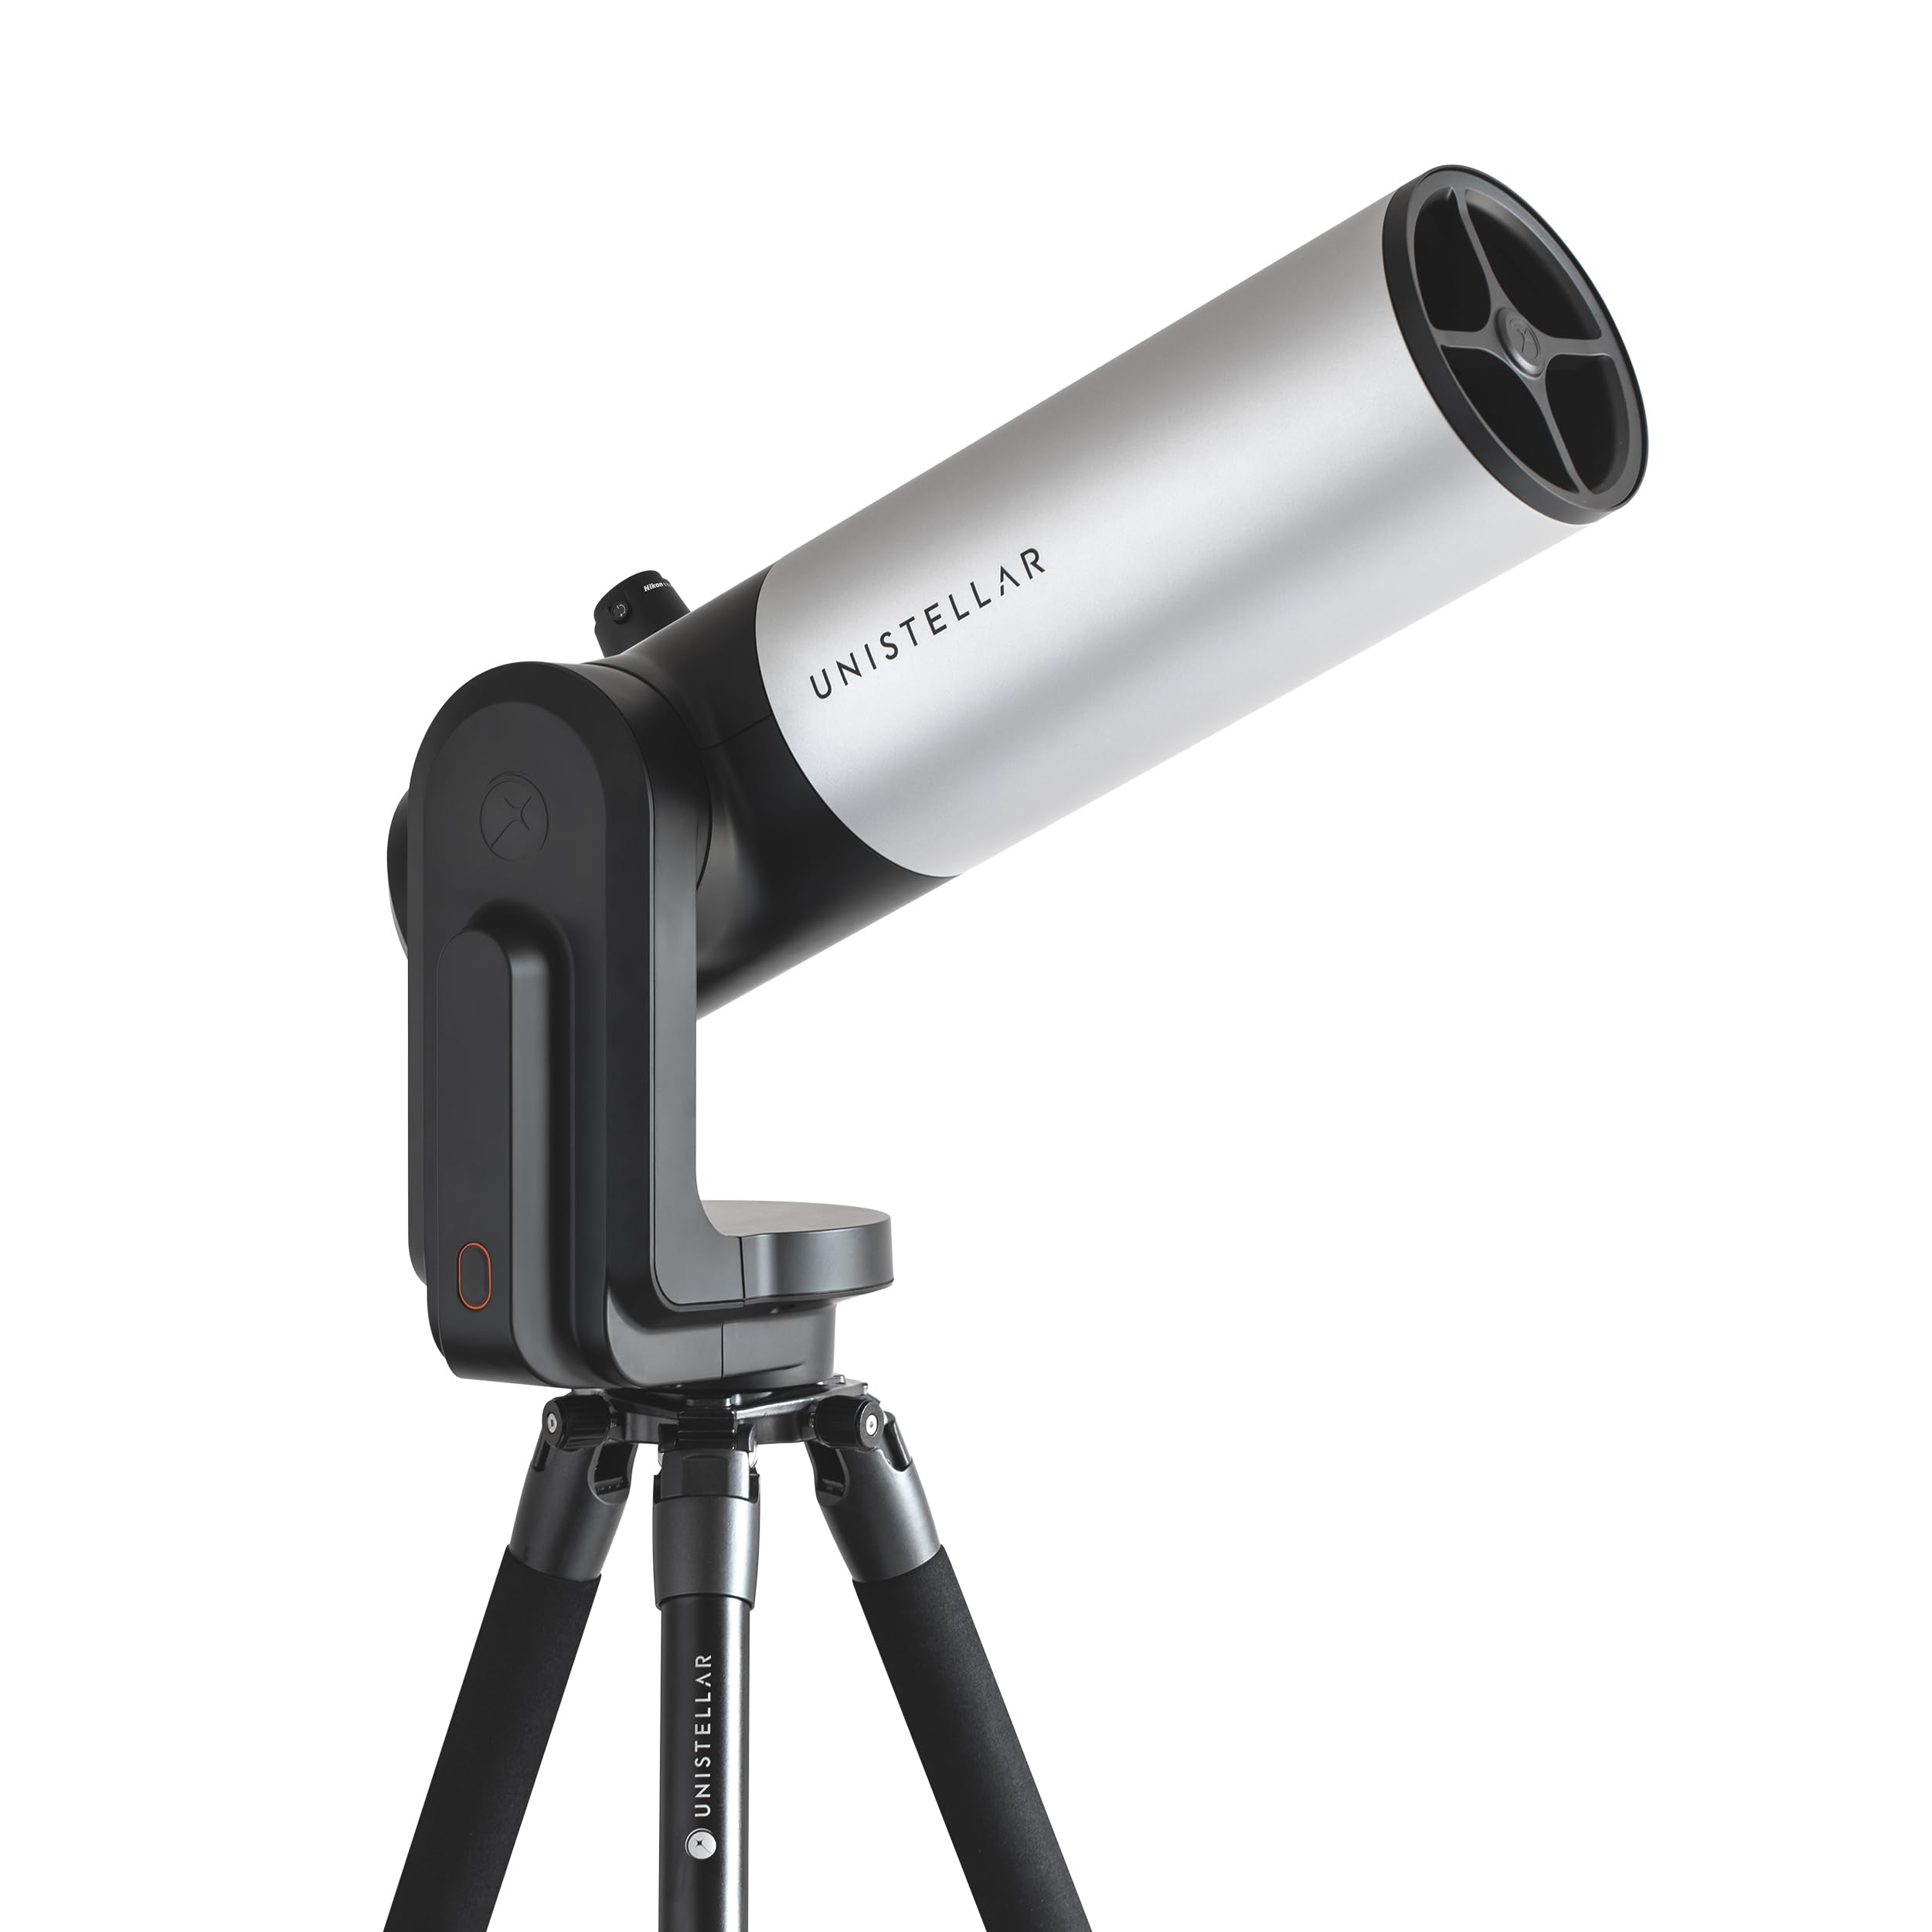 UNISTELLAR - EVSCOPE 2 - Smart Digitales Teleskop - Anfänger und erfahrene Benutzer - iPhone und Android kompatibel - 114mm Öffnung - Nikon Okular Technologie